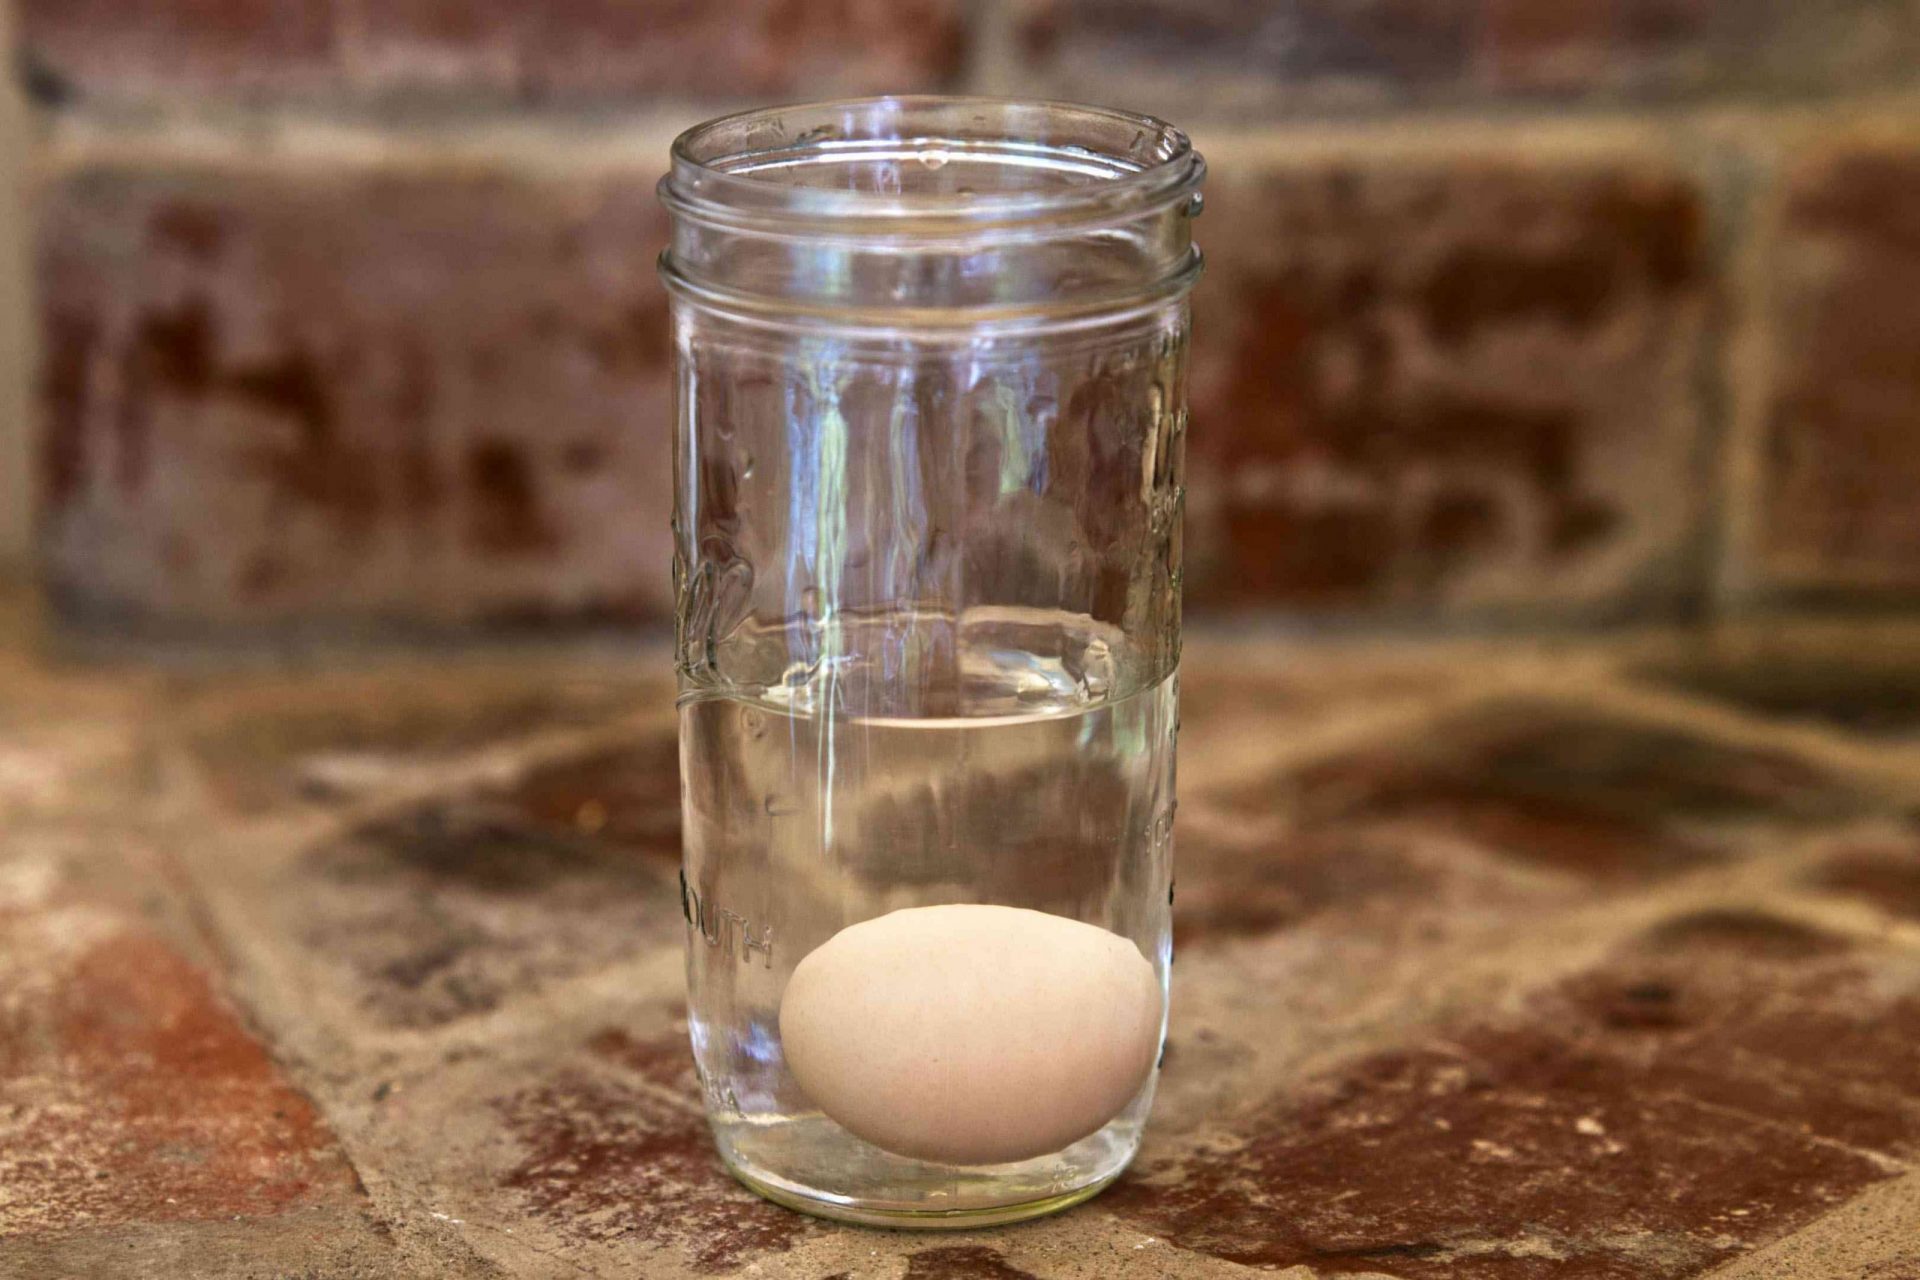 prueba de flotación del huevo en un tarro de cristal lleno de agua sobre la encimera de piedra